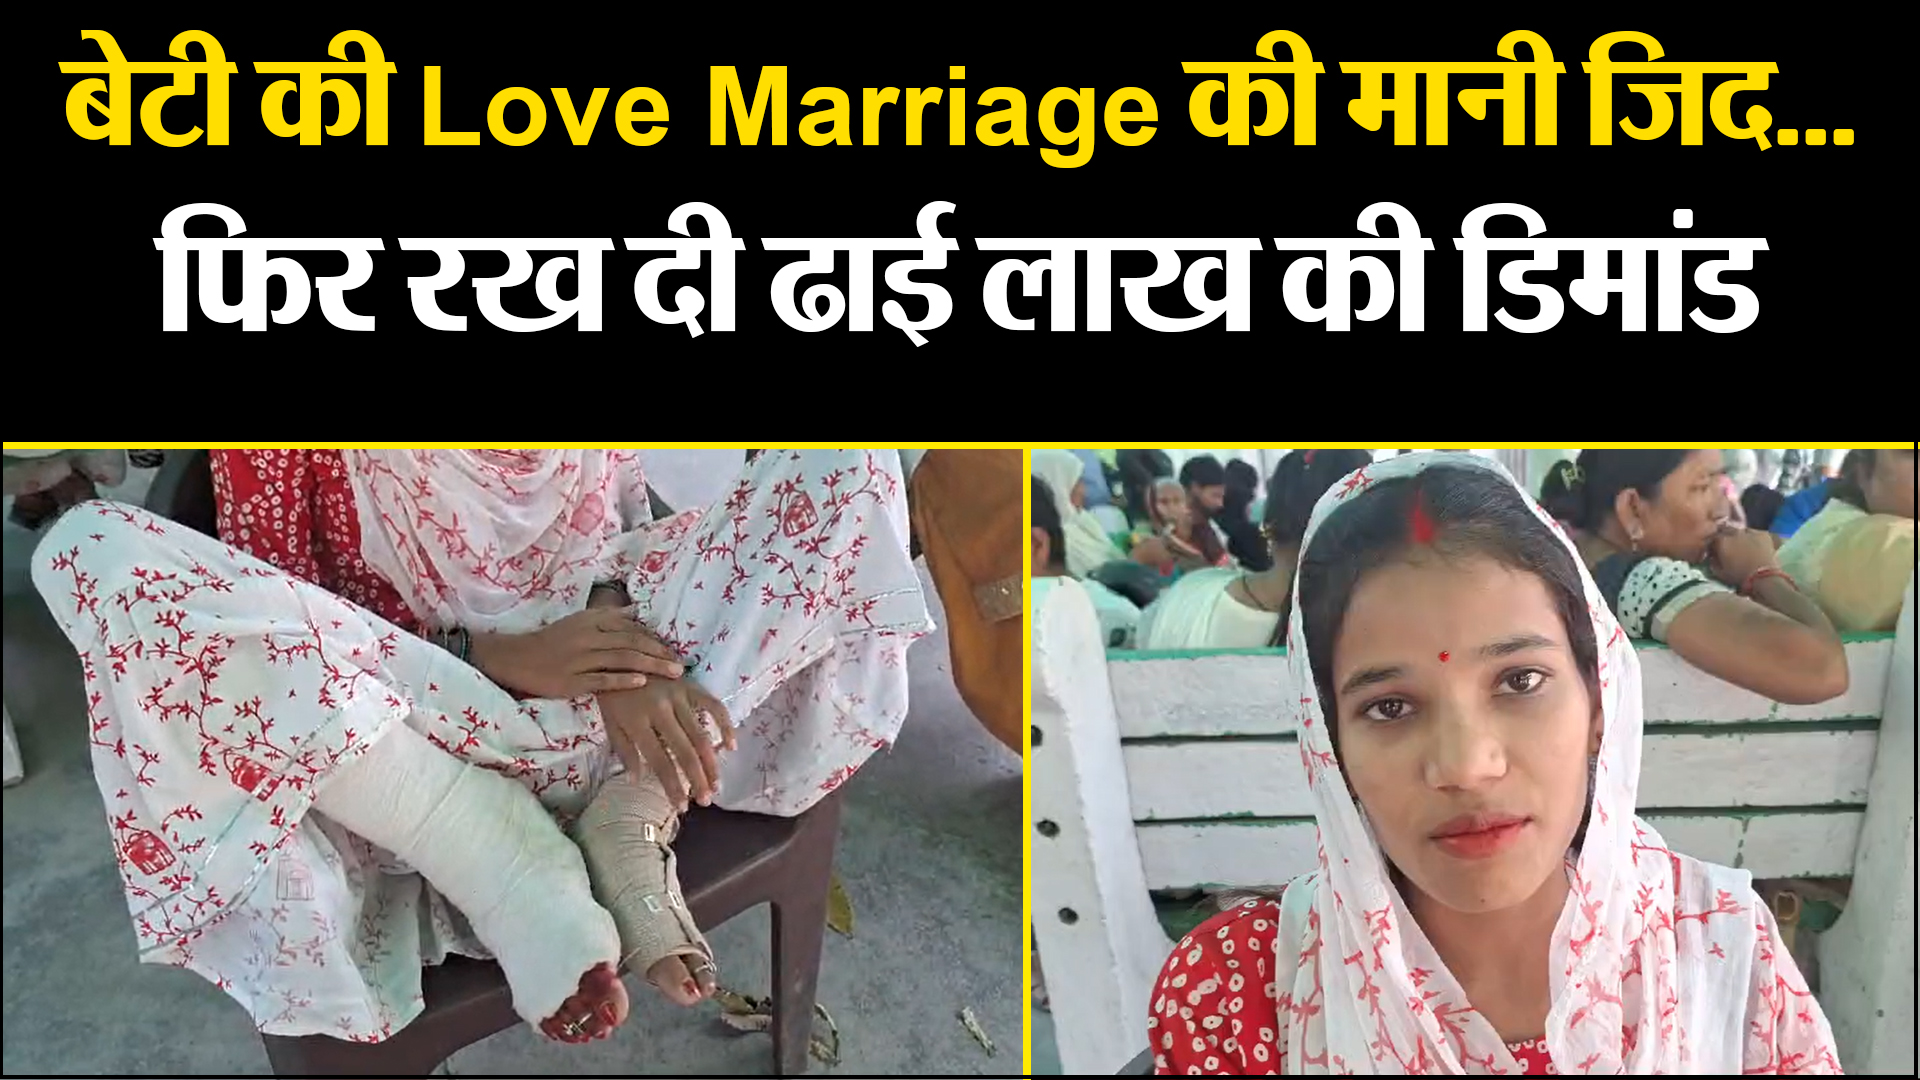 बरेली: बेटी की Love Marriage की मानी जिद...फिर रख दी ढाई लाख की डिमांड, विरोध पर जमकर पीटा